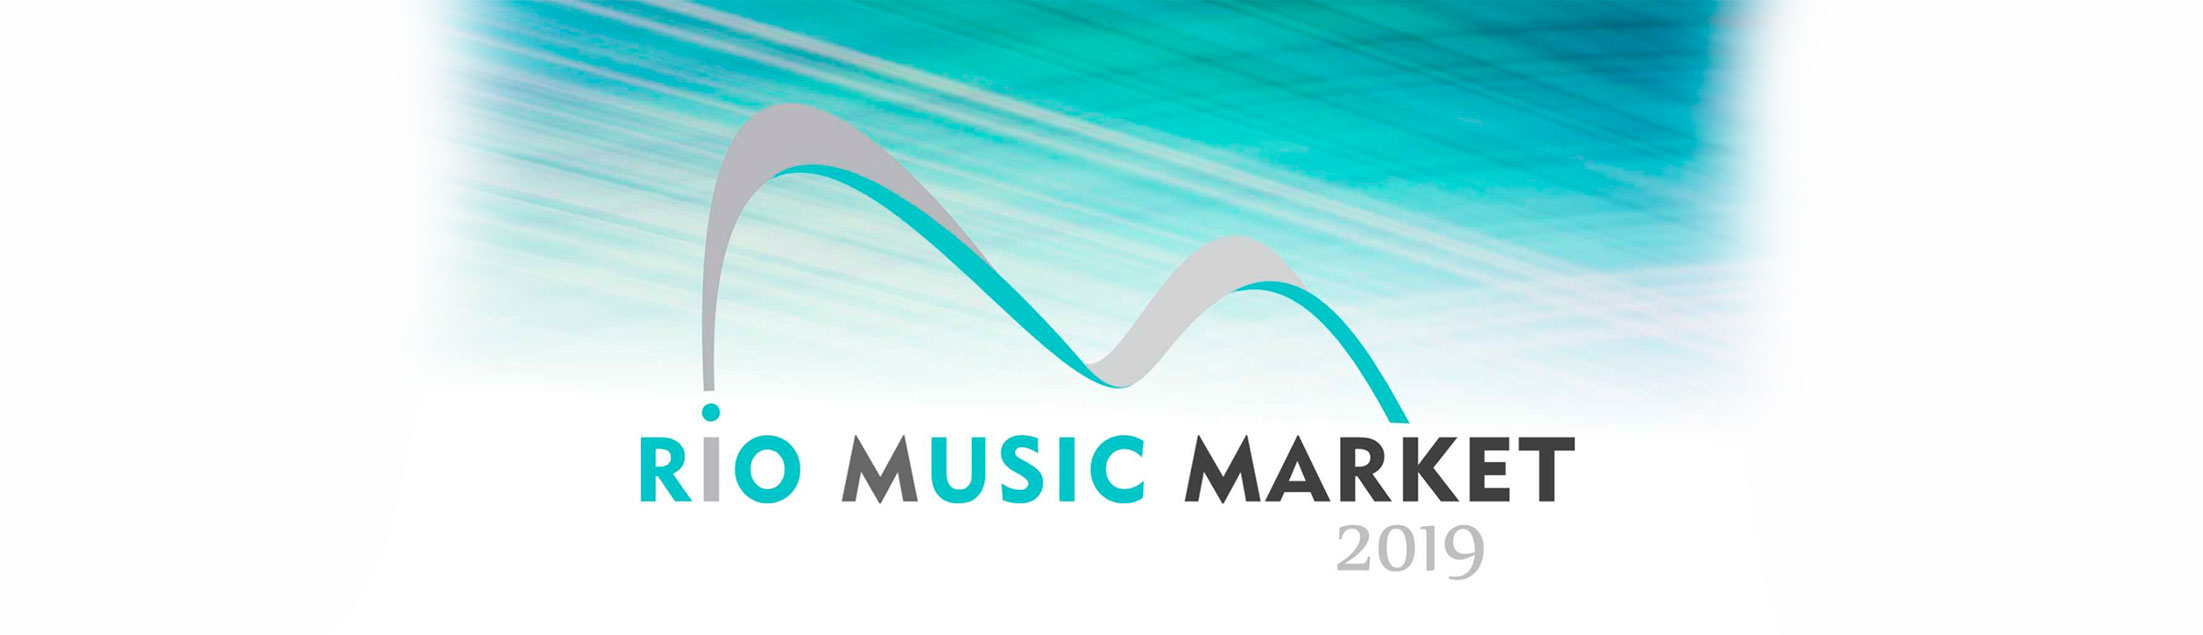 RIO MUSIC MARKET: Sétima edição reunirá mais de 60 profissionais em cerca de 30 painéis